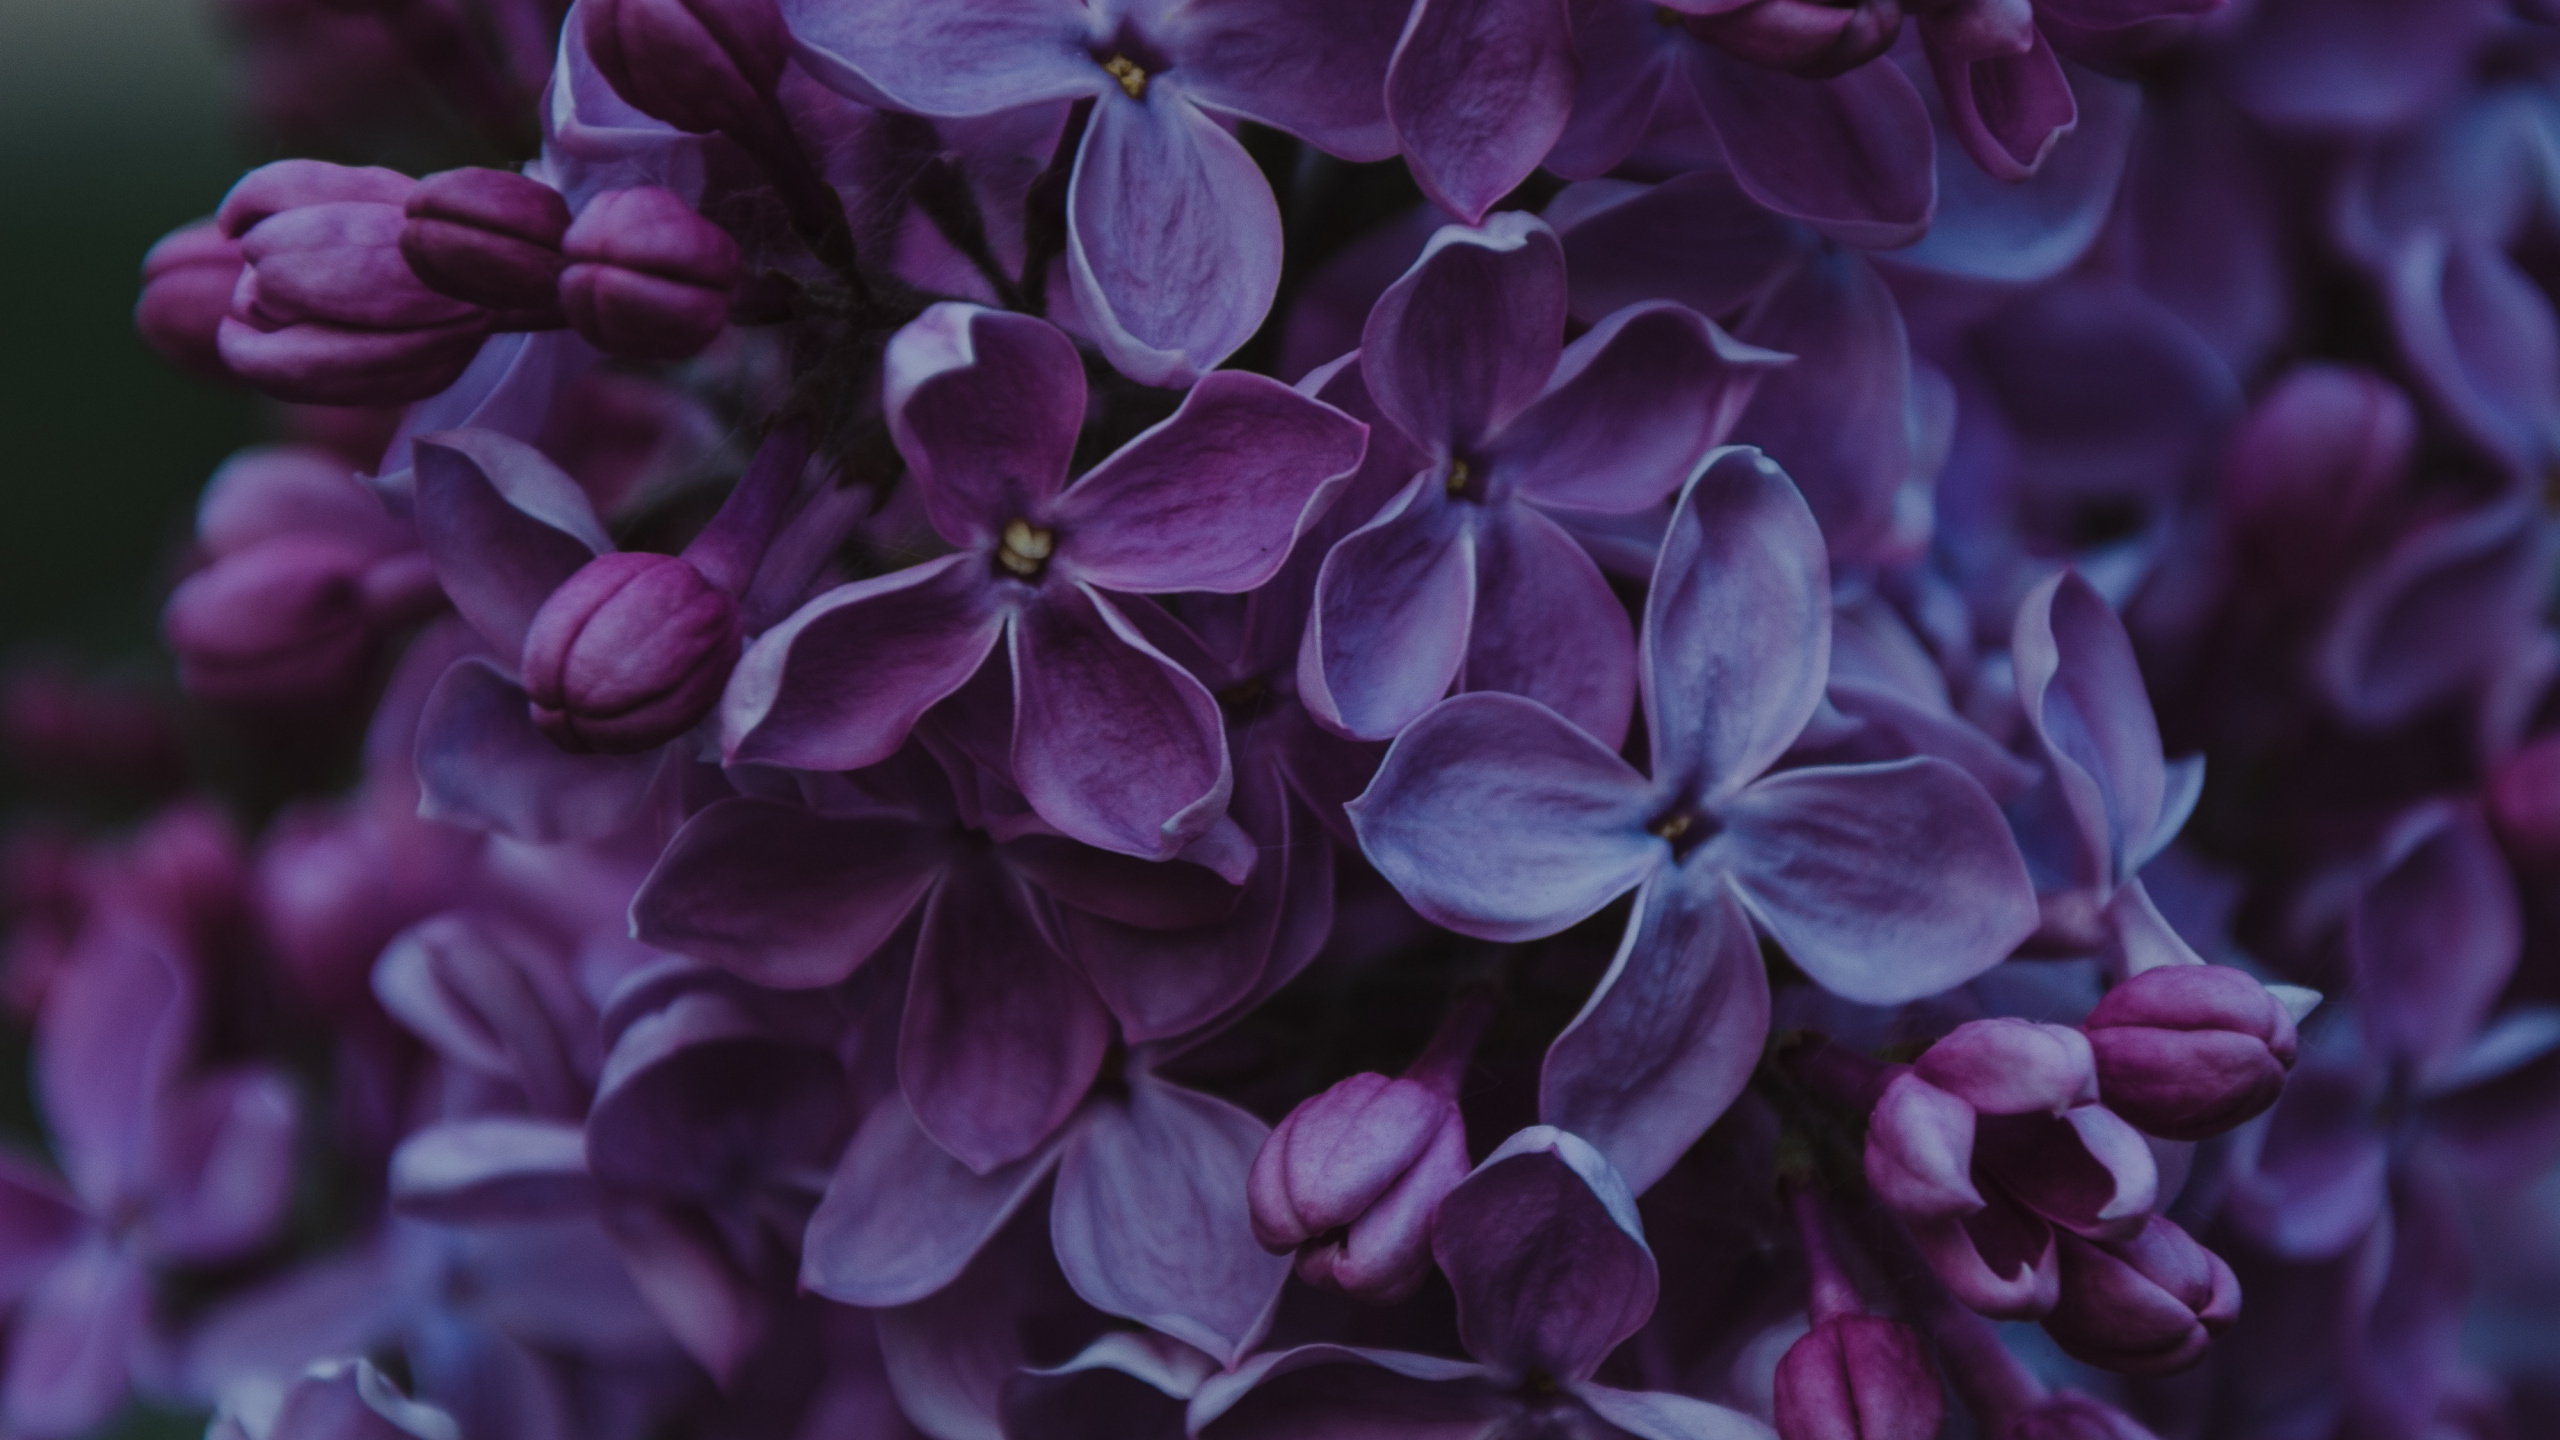 紫色的, 紫罗兰色, 显花植物, 淡紫色的, 弹簧 壁纸 2560x1440 允许